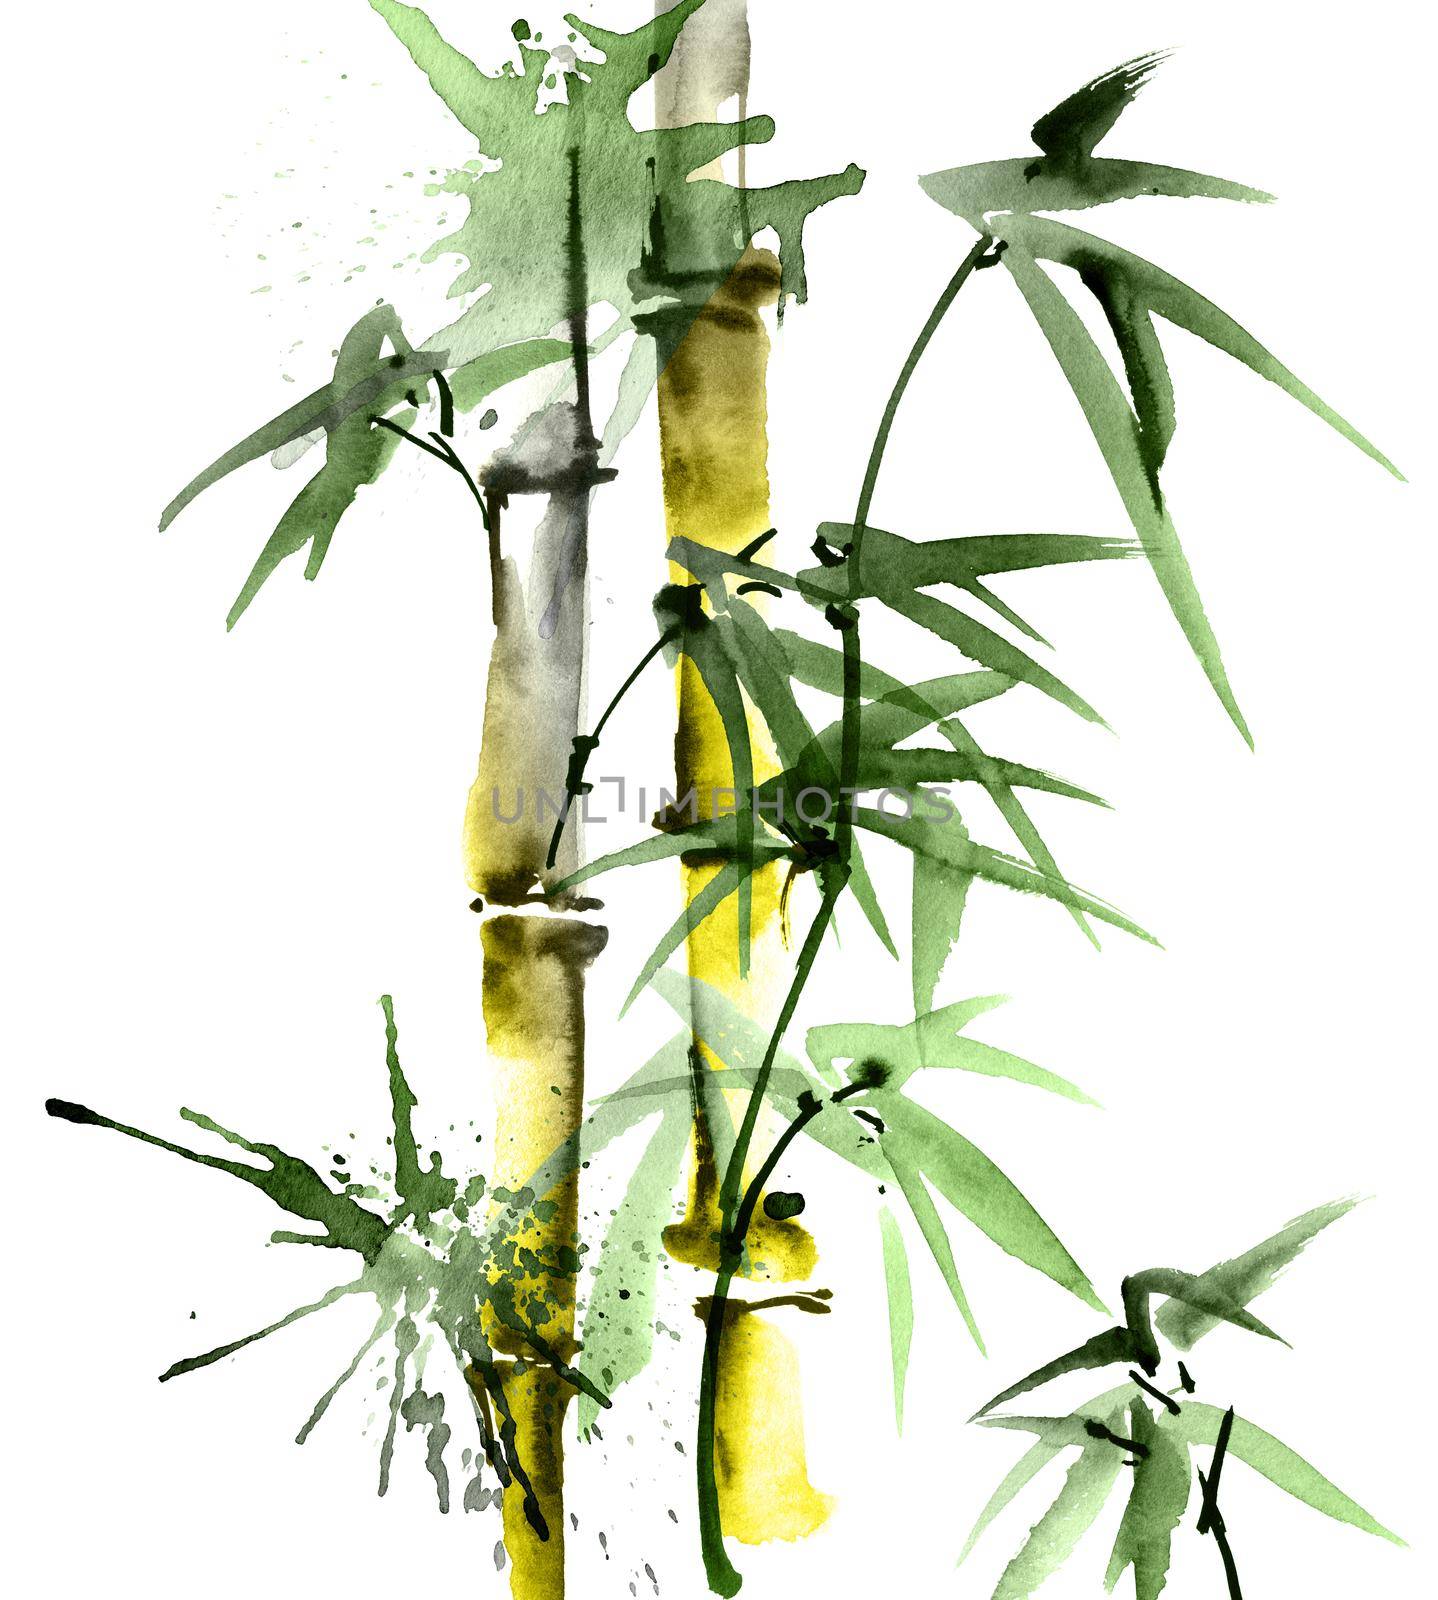 Watercolor bamboo with leaves by Olatarakanova